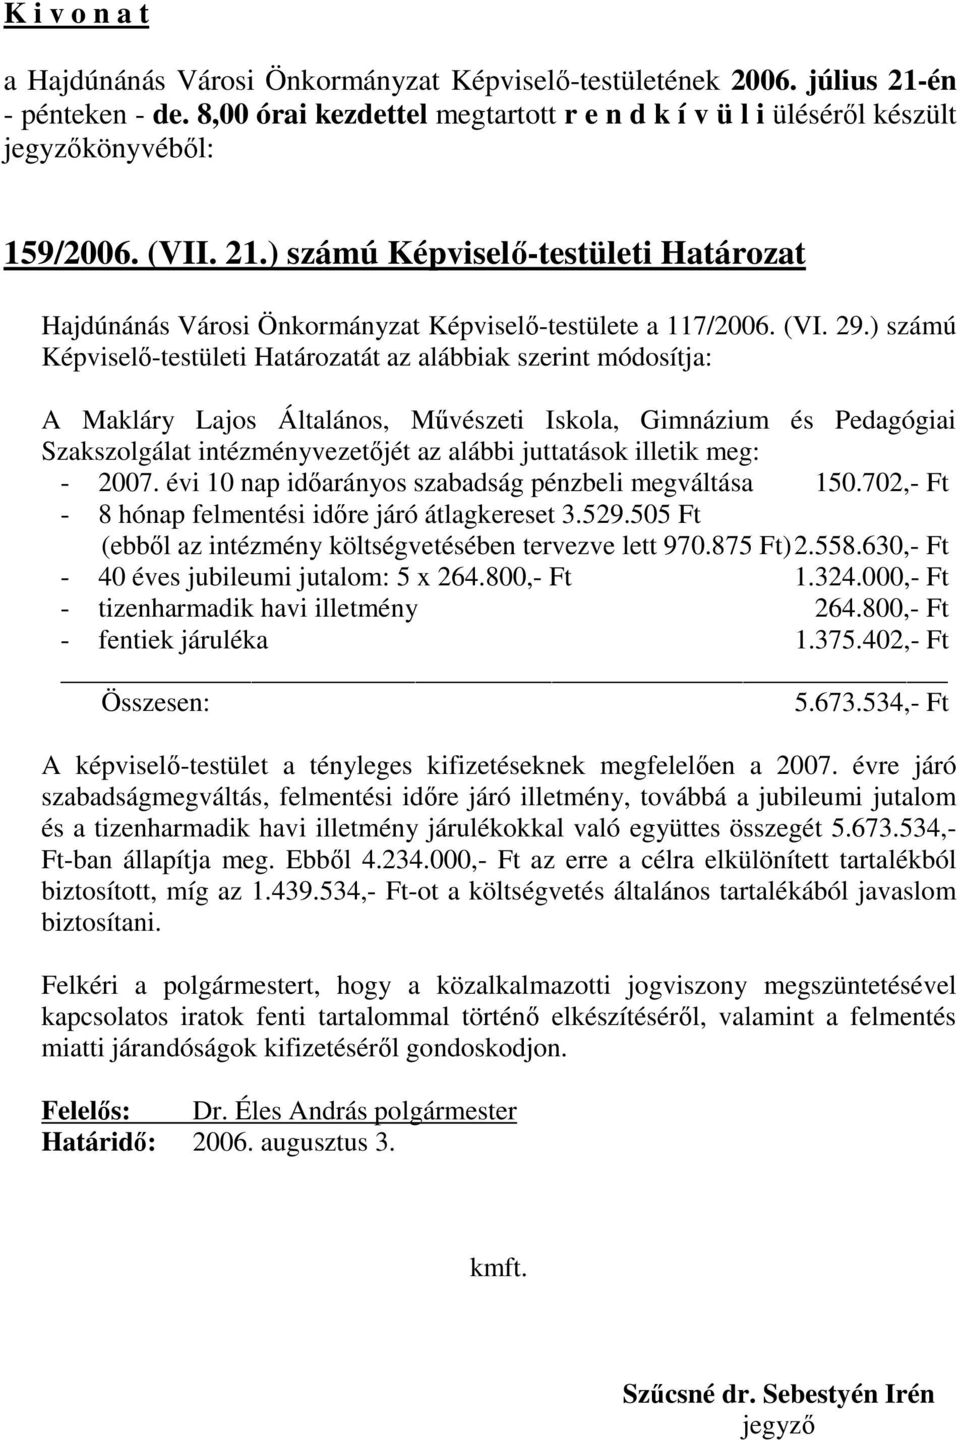 illetik meg: - 2007. évi 10 nap idıarányos szabadság pénzbeli megváltása 150.702,- Ft - 8 hónap felmentési idıre járó átlagkereset 3.529.505 Ft (ebbıl az intézmény költségvetésében tervezve lett 970.